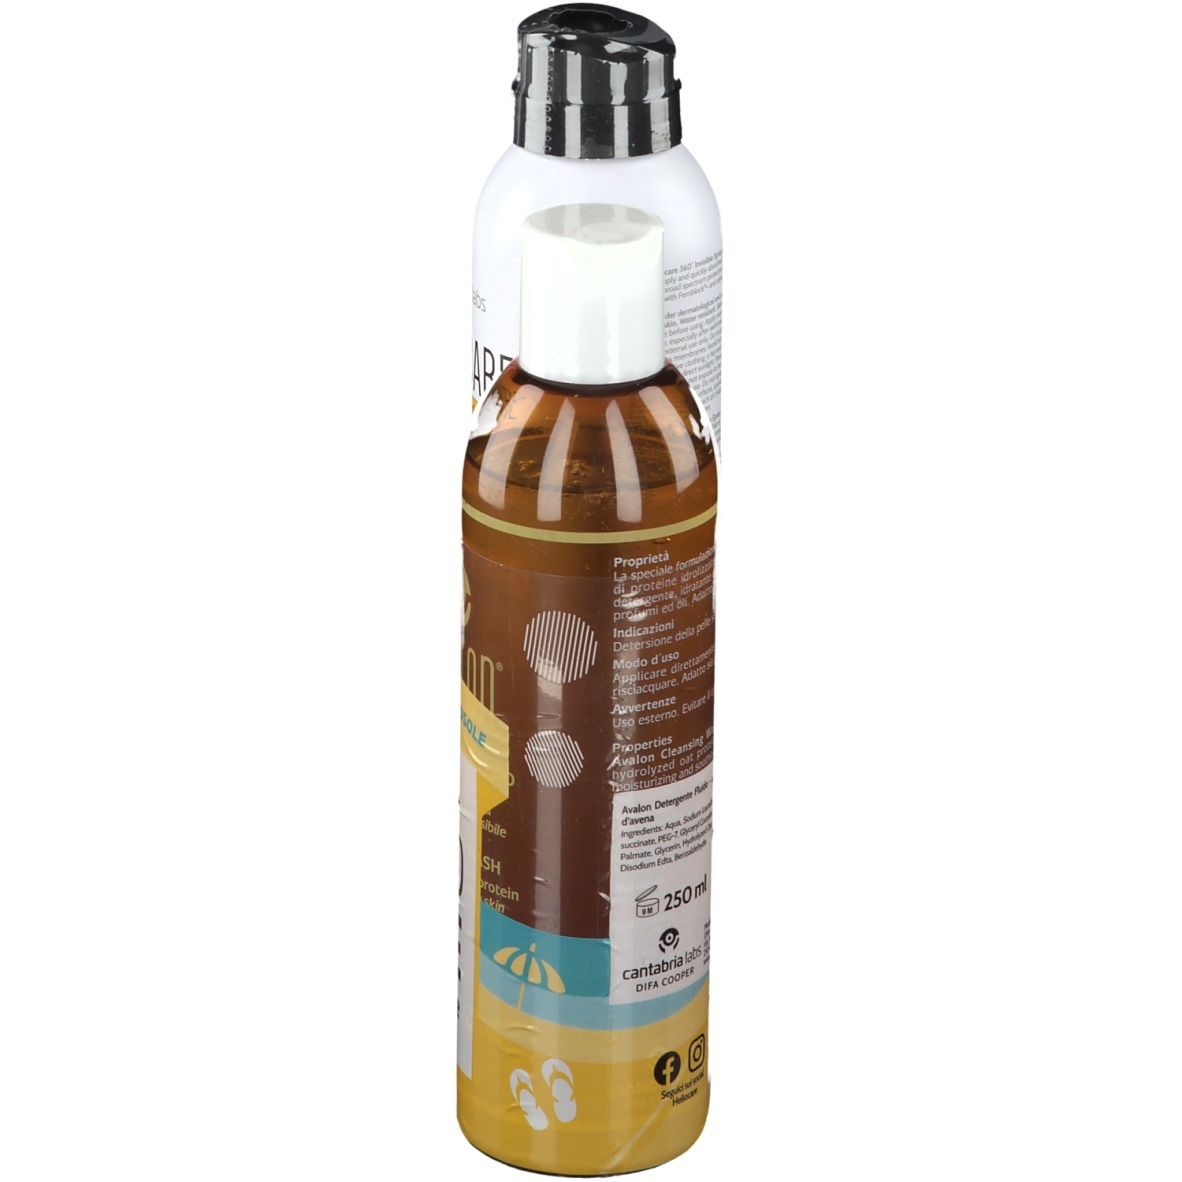 HELIOCARE 360° Invisible Spray SPF 50+ e Avalon® Detergente Fluido 250 ml